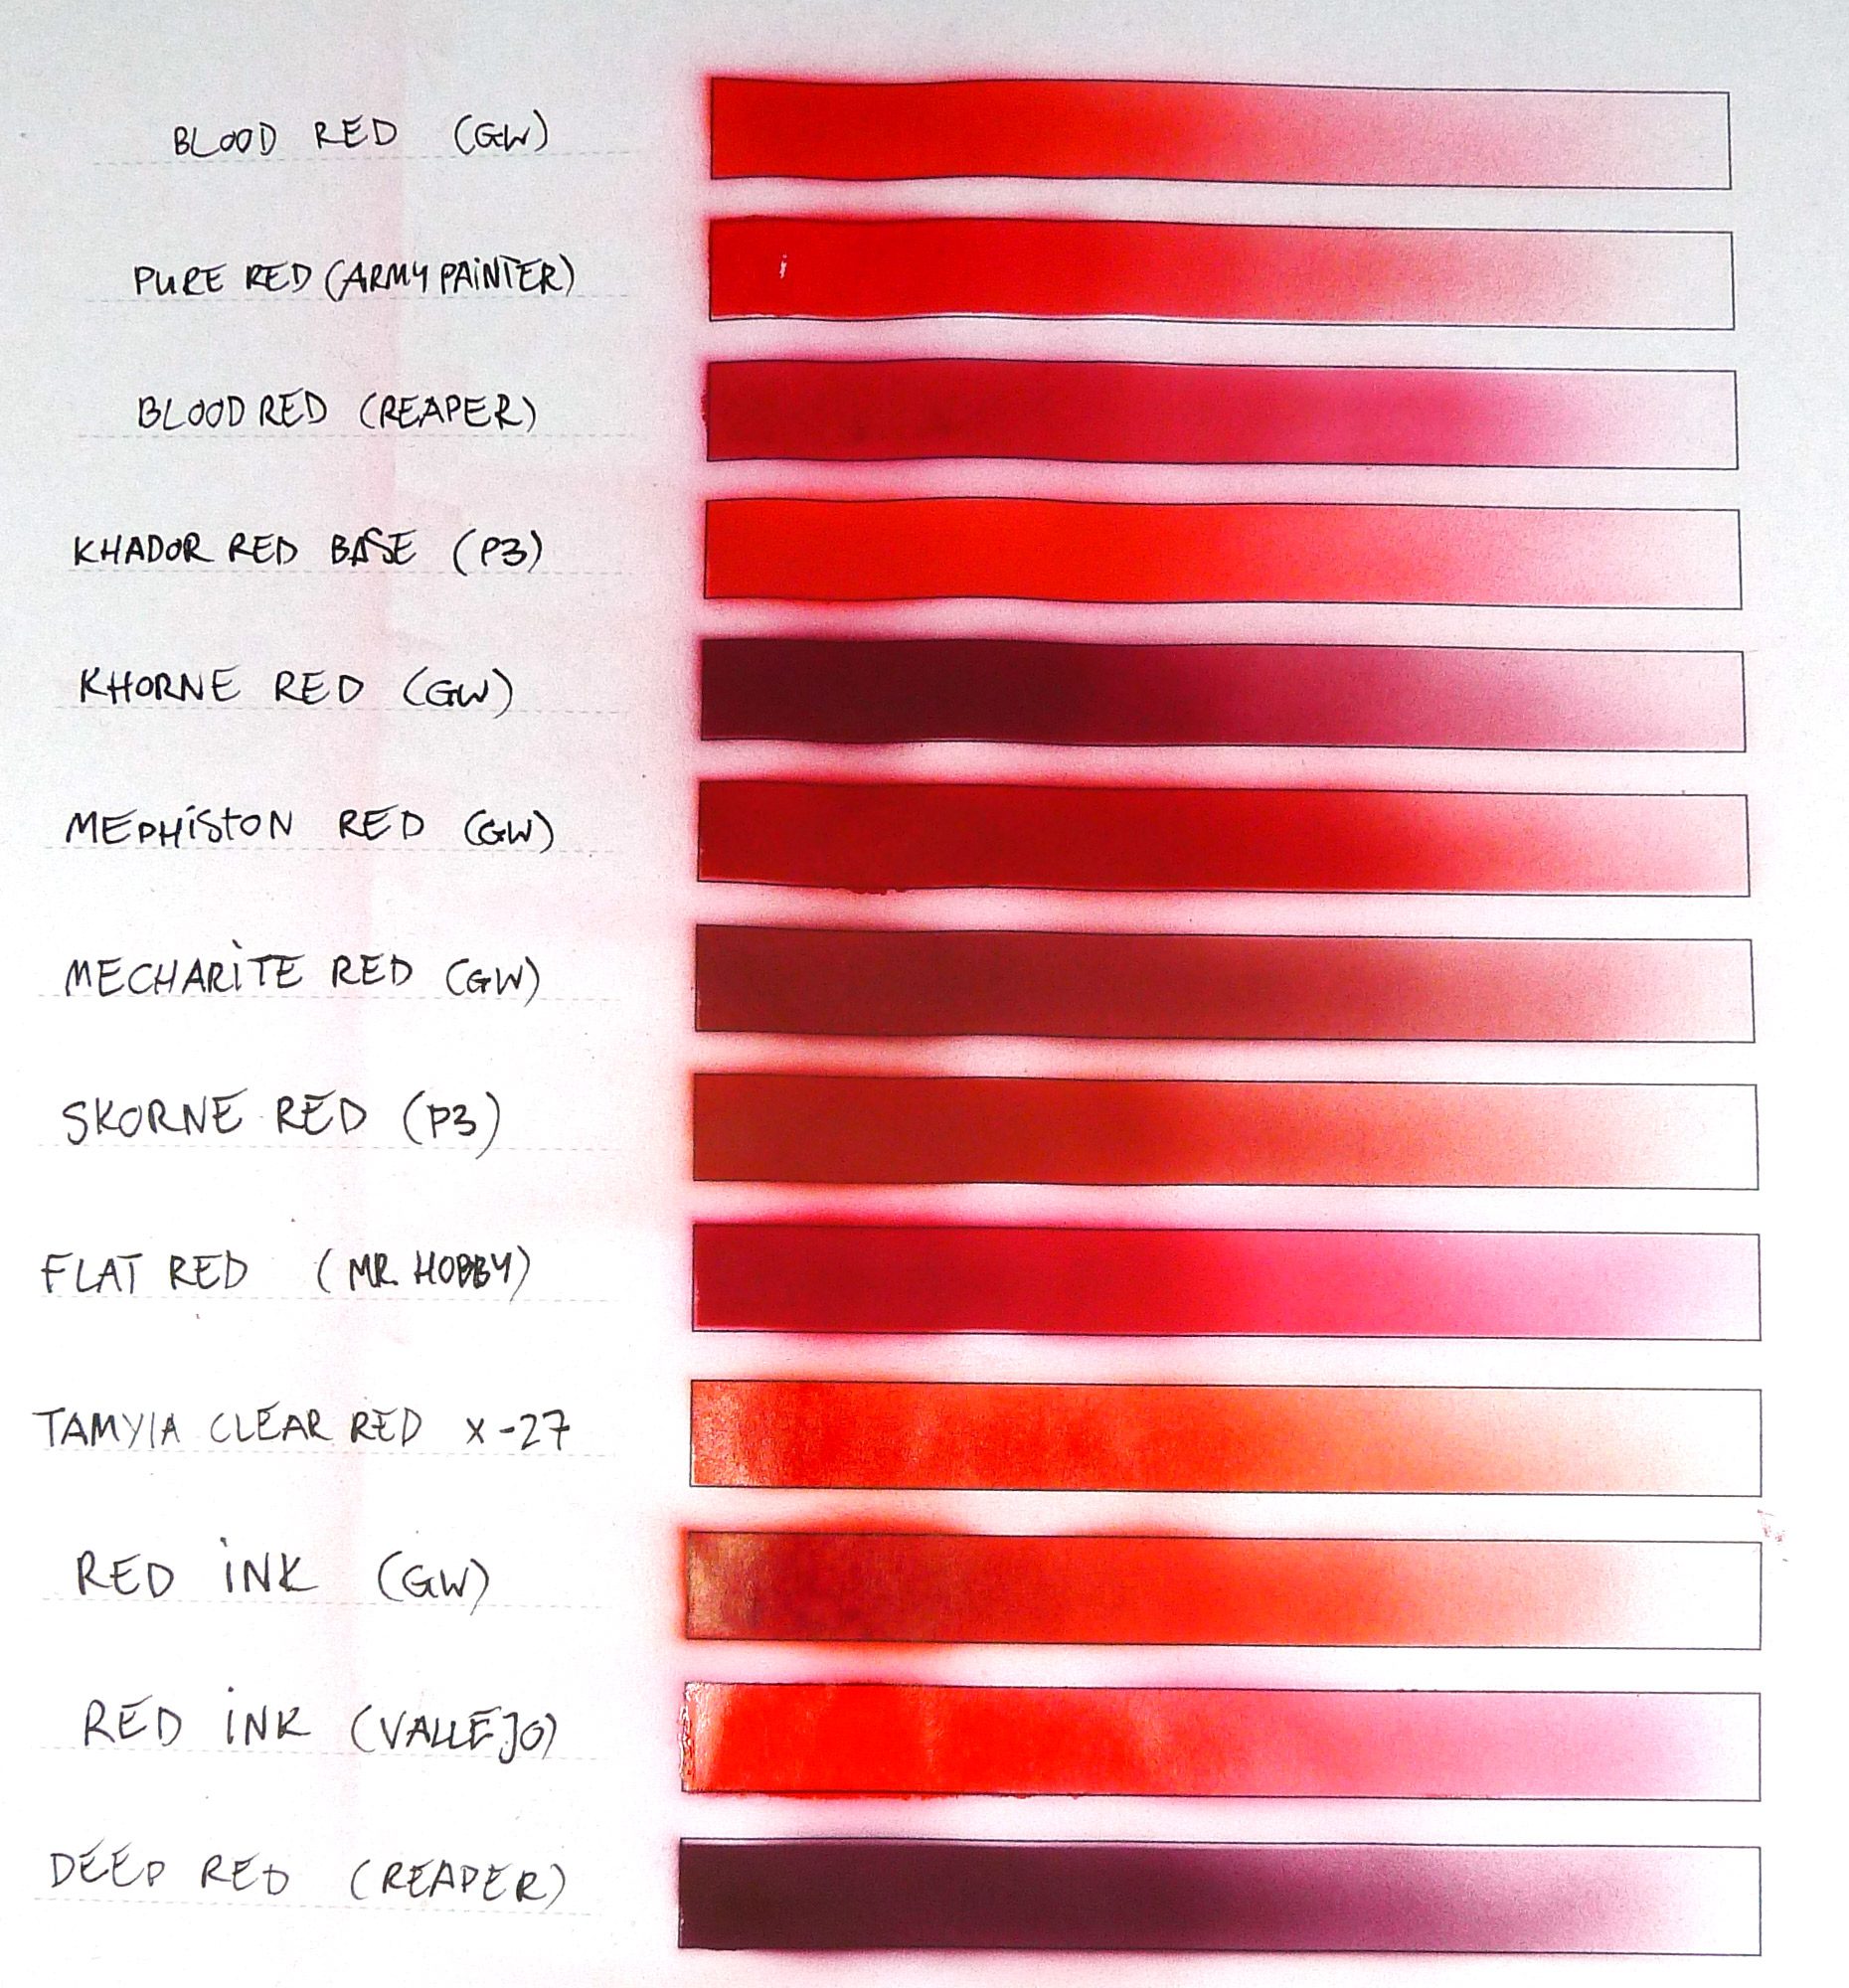 amplitude Odds leder Red paints comparison chart -